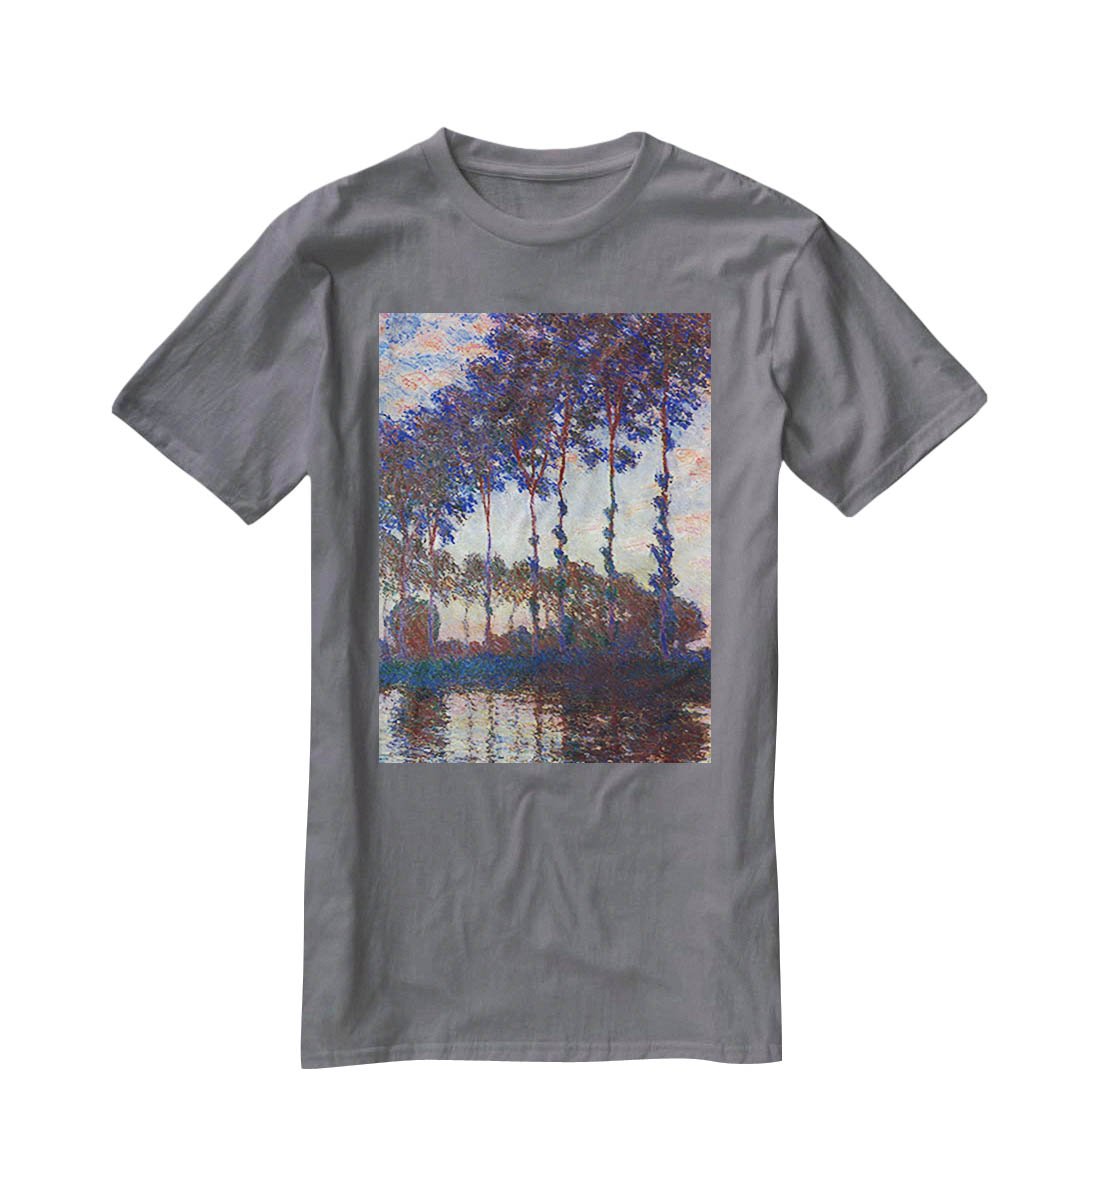 Poplars sunset by Monet T-Shirt - Canvas Art Rocks - 3